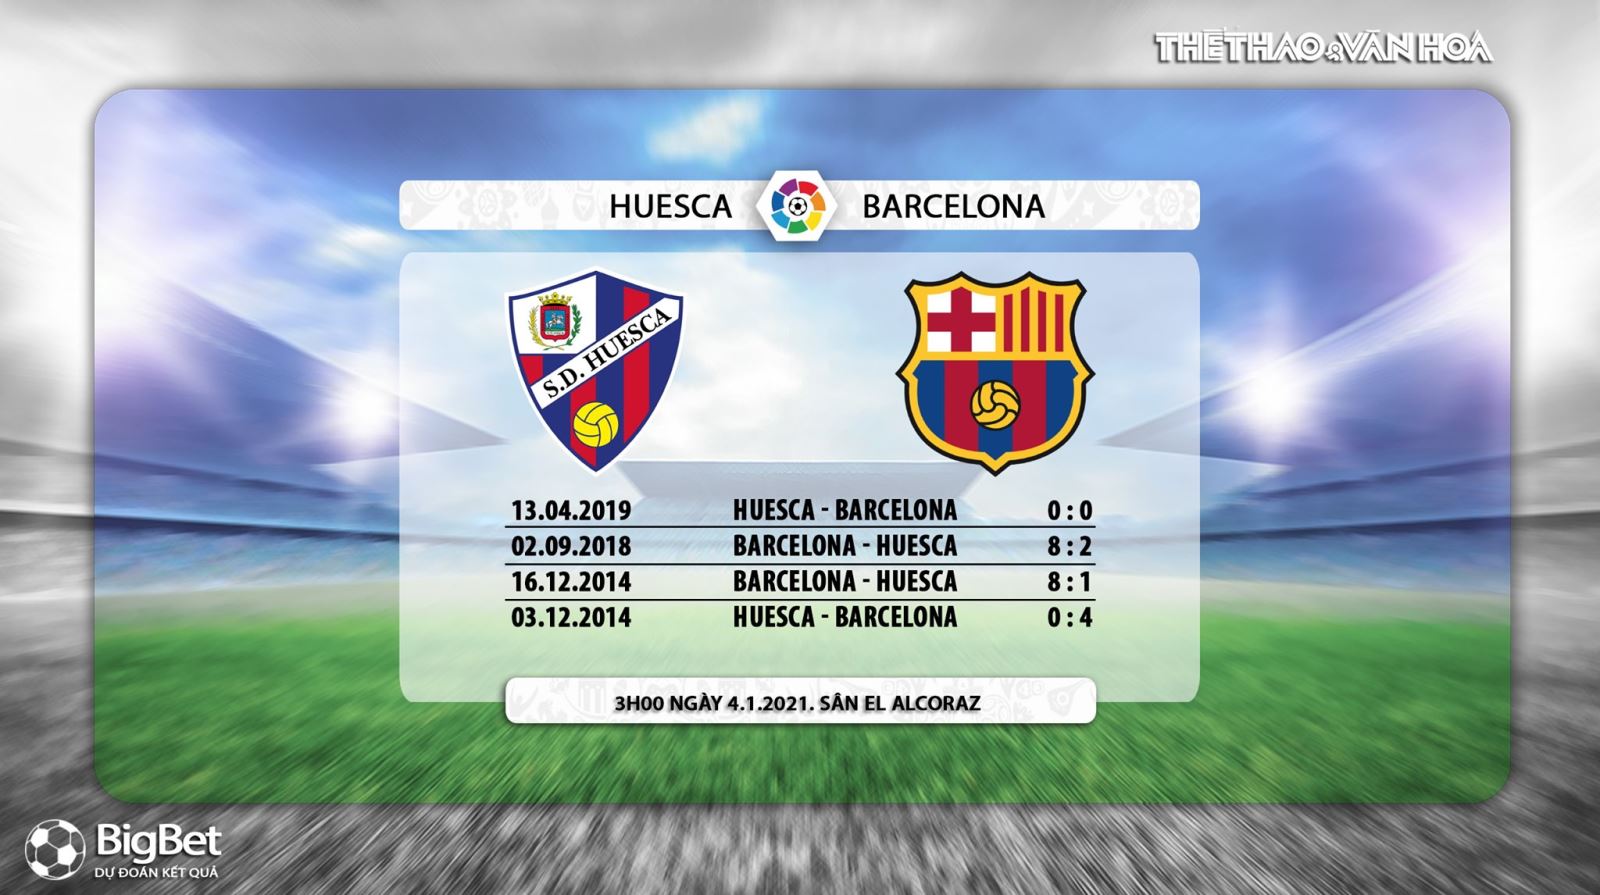 Keo nha cai, Nhận định kết quả, Huesca vs Barcelona, BĐTV, Trực tiếp bóng đá Tây Ban Nha, Trực tiếp Huesca đấu với Barcelona, Kèo bóng đá Huesca vs Barcelona, Vòng 17 La Liga